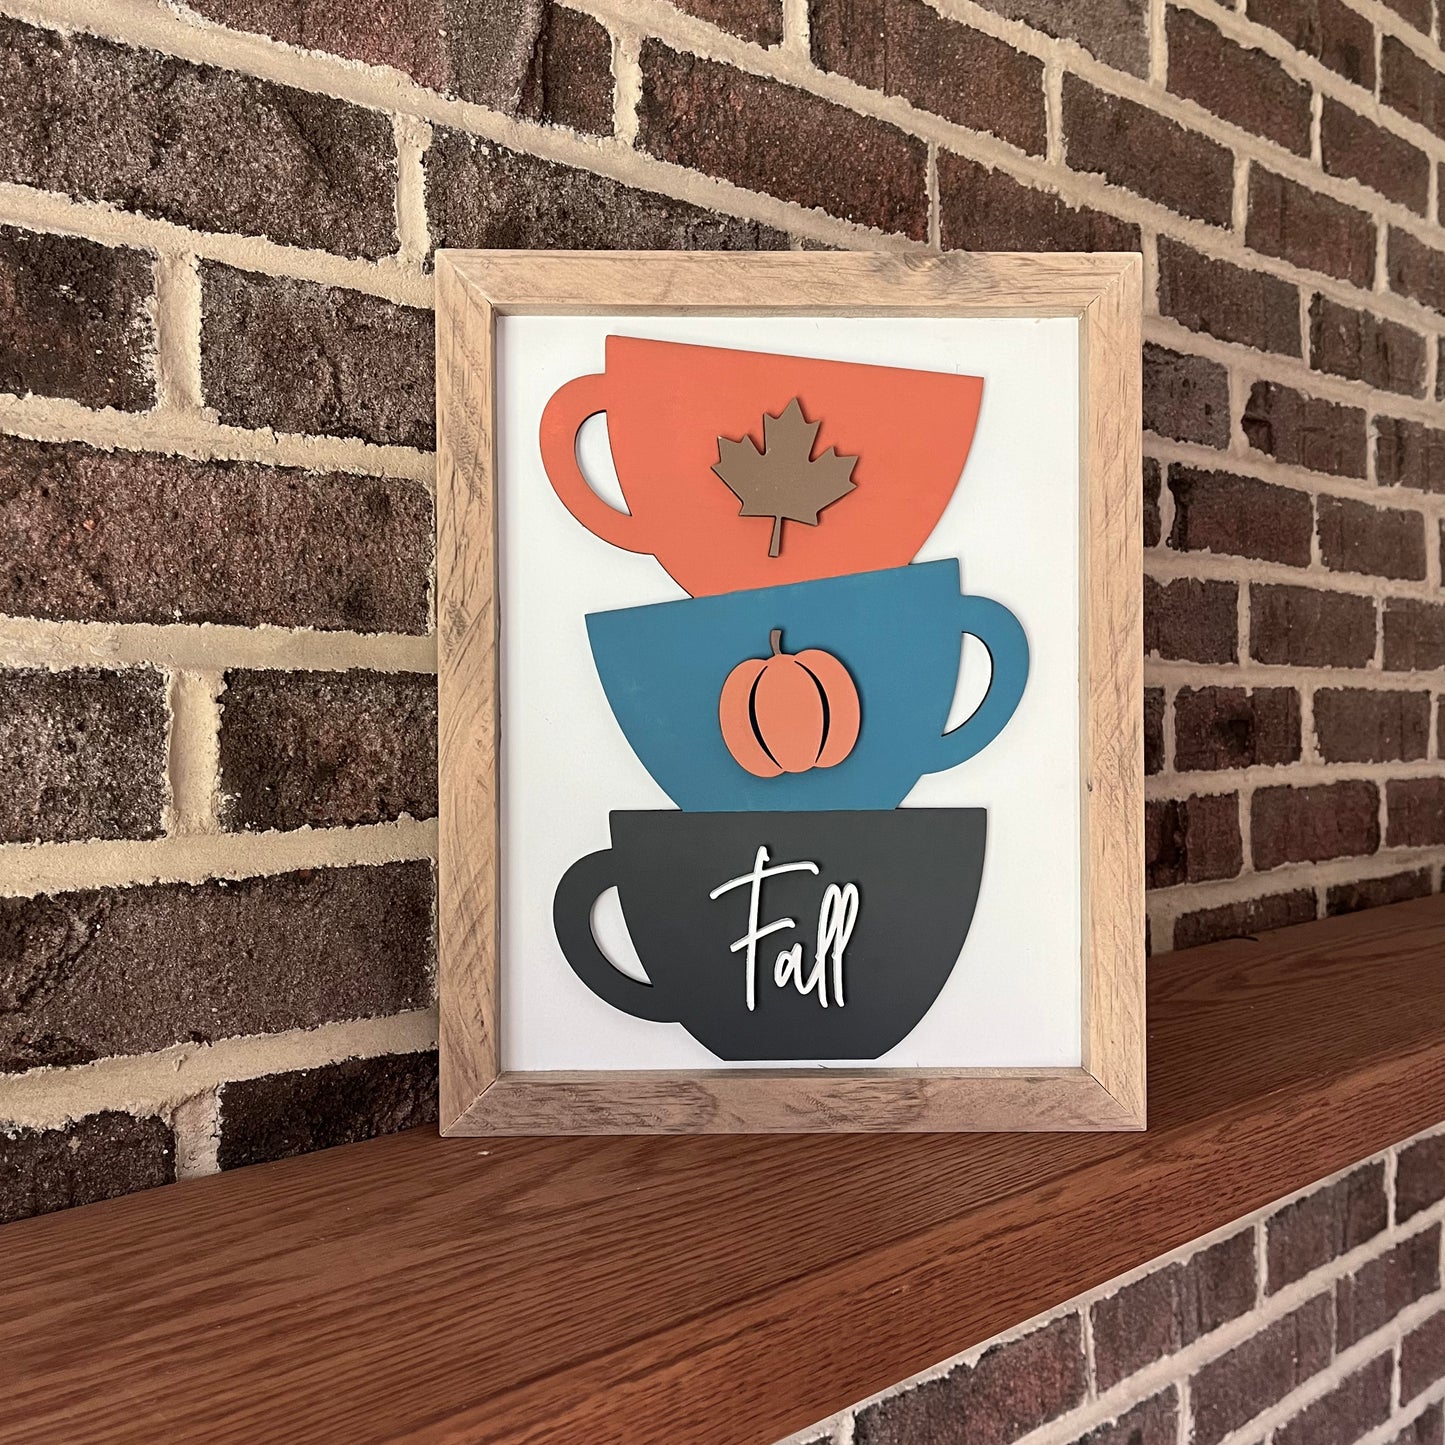 Fall mug stack 3D wood sign